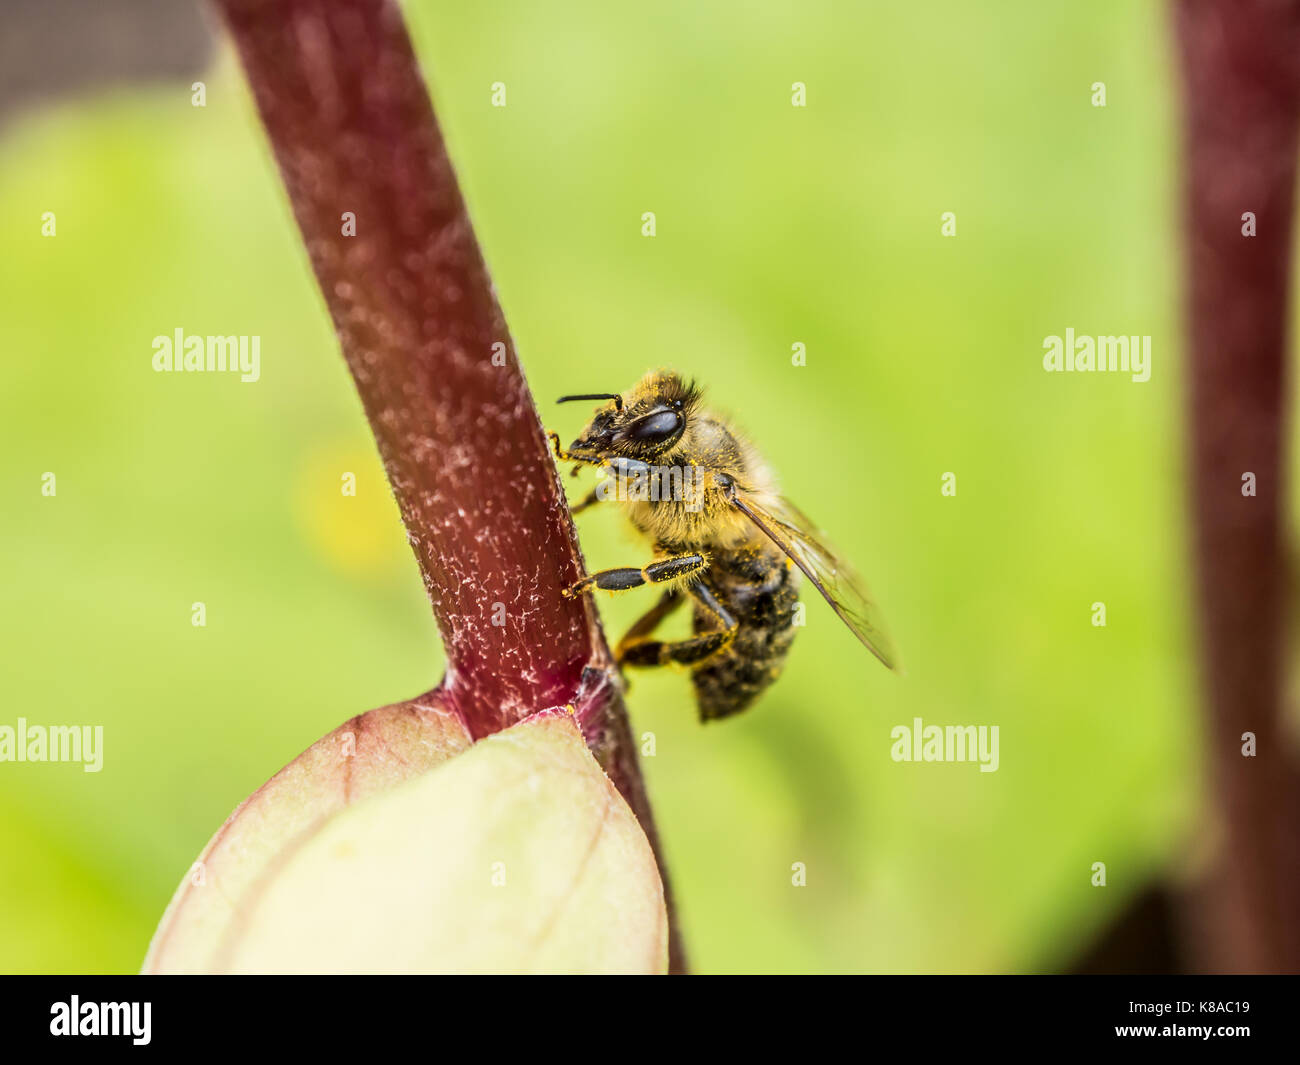 Impollinatori. Honey Bee seduta su un fiore rosso ramoscello. vista macro. fotografia di close-up. sfondo verde. Foto Stock